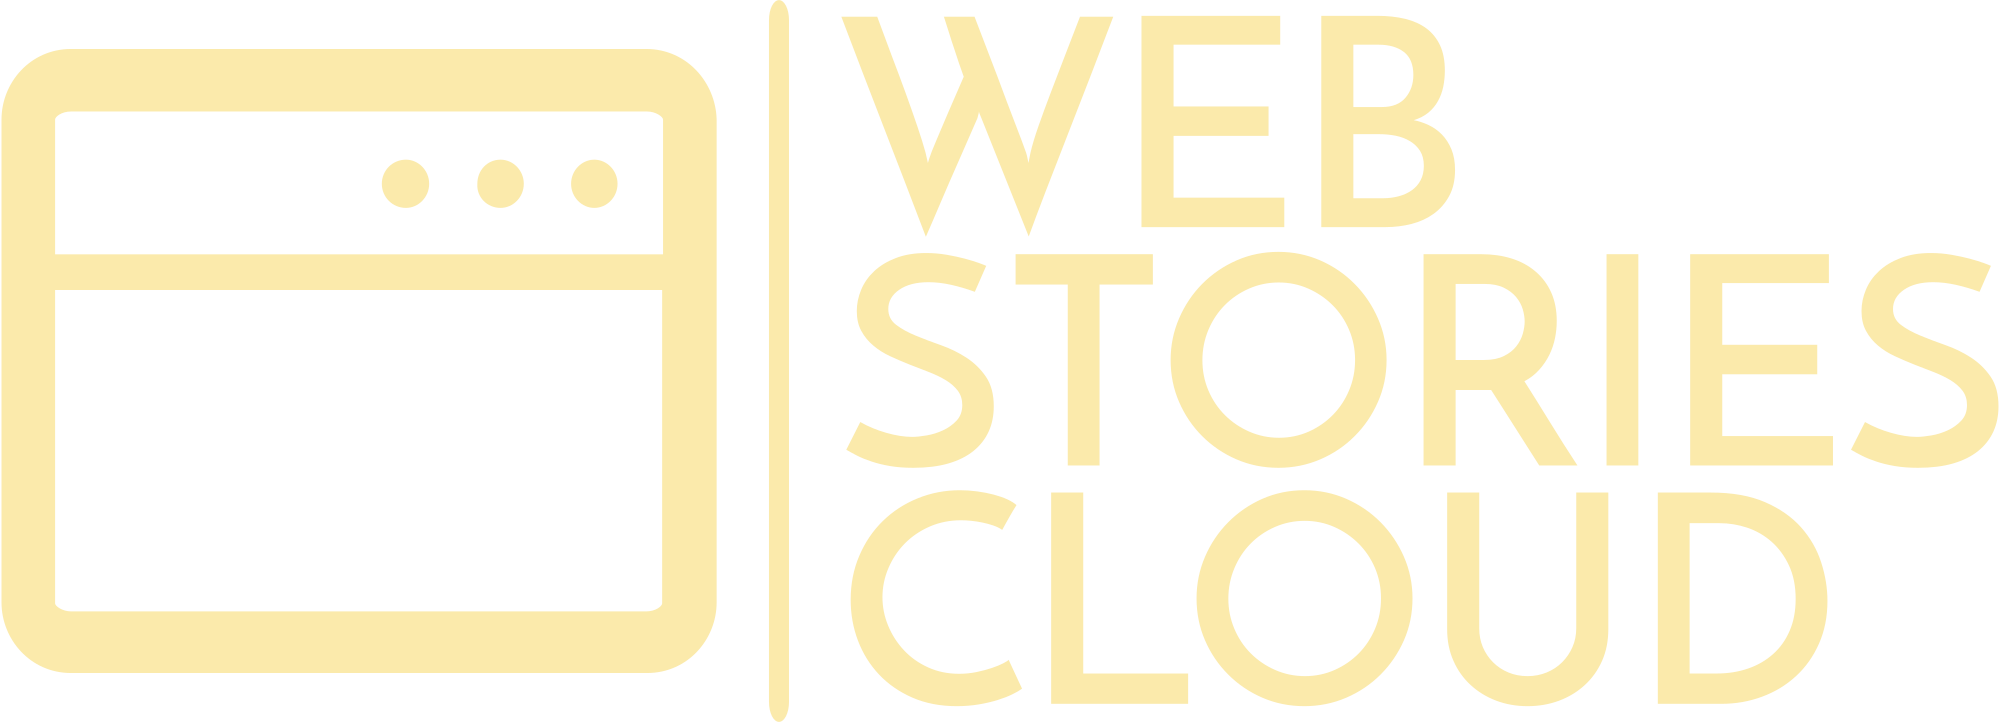 Web Stories Cloud